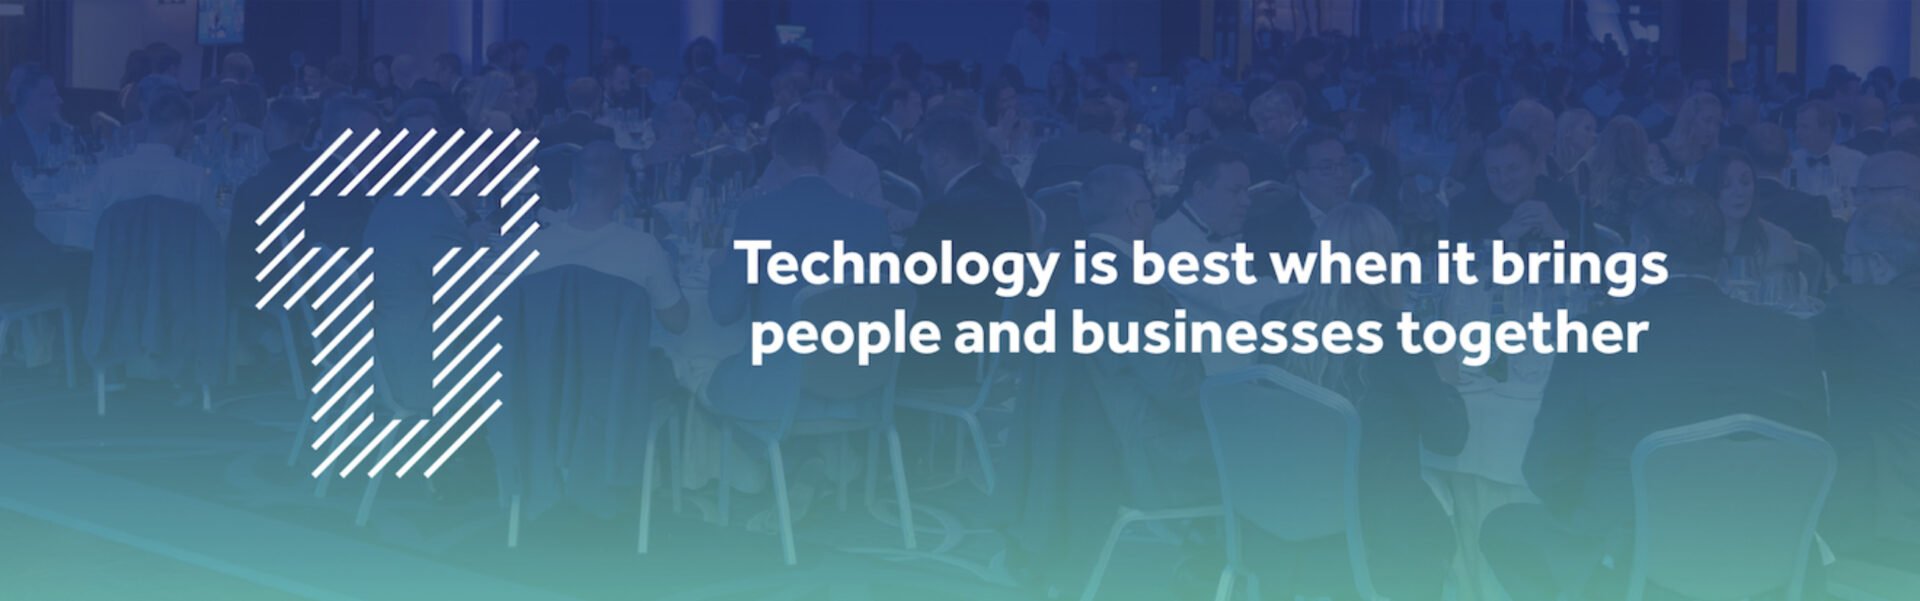 UK Business Tech Award Caption Banner